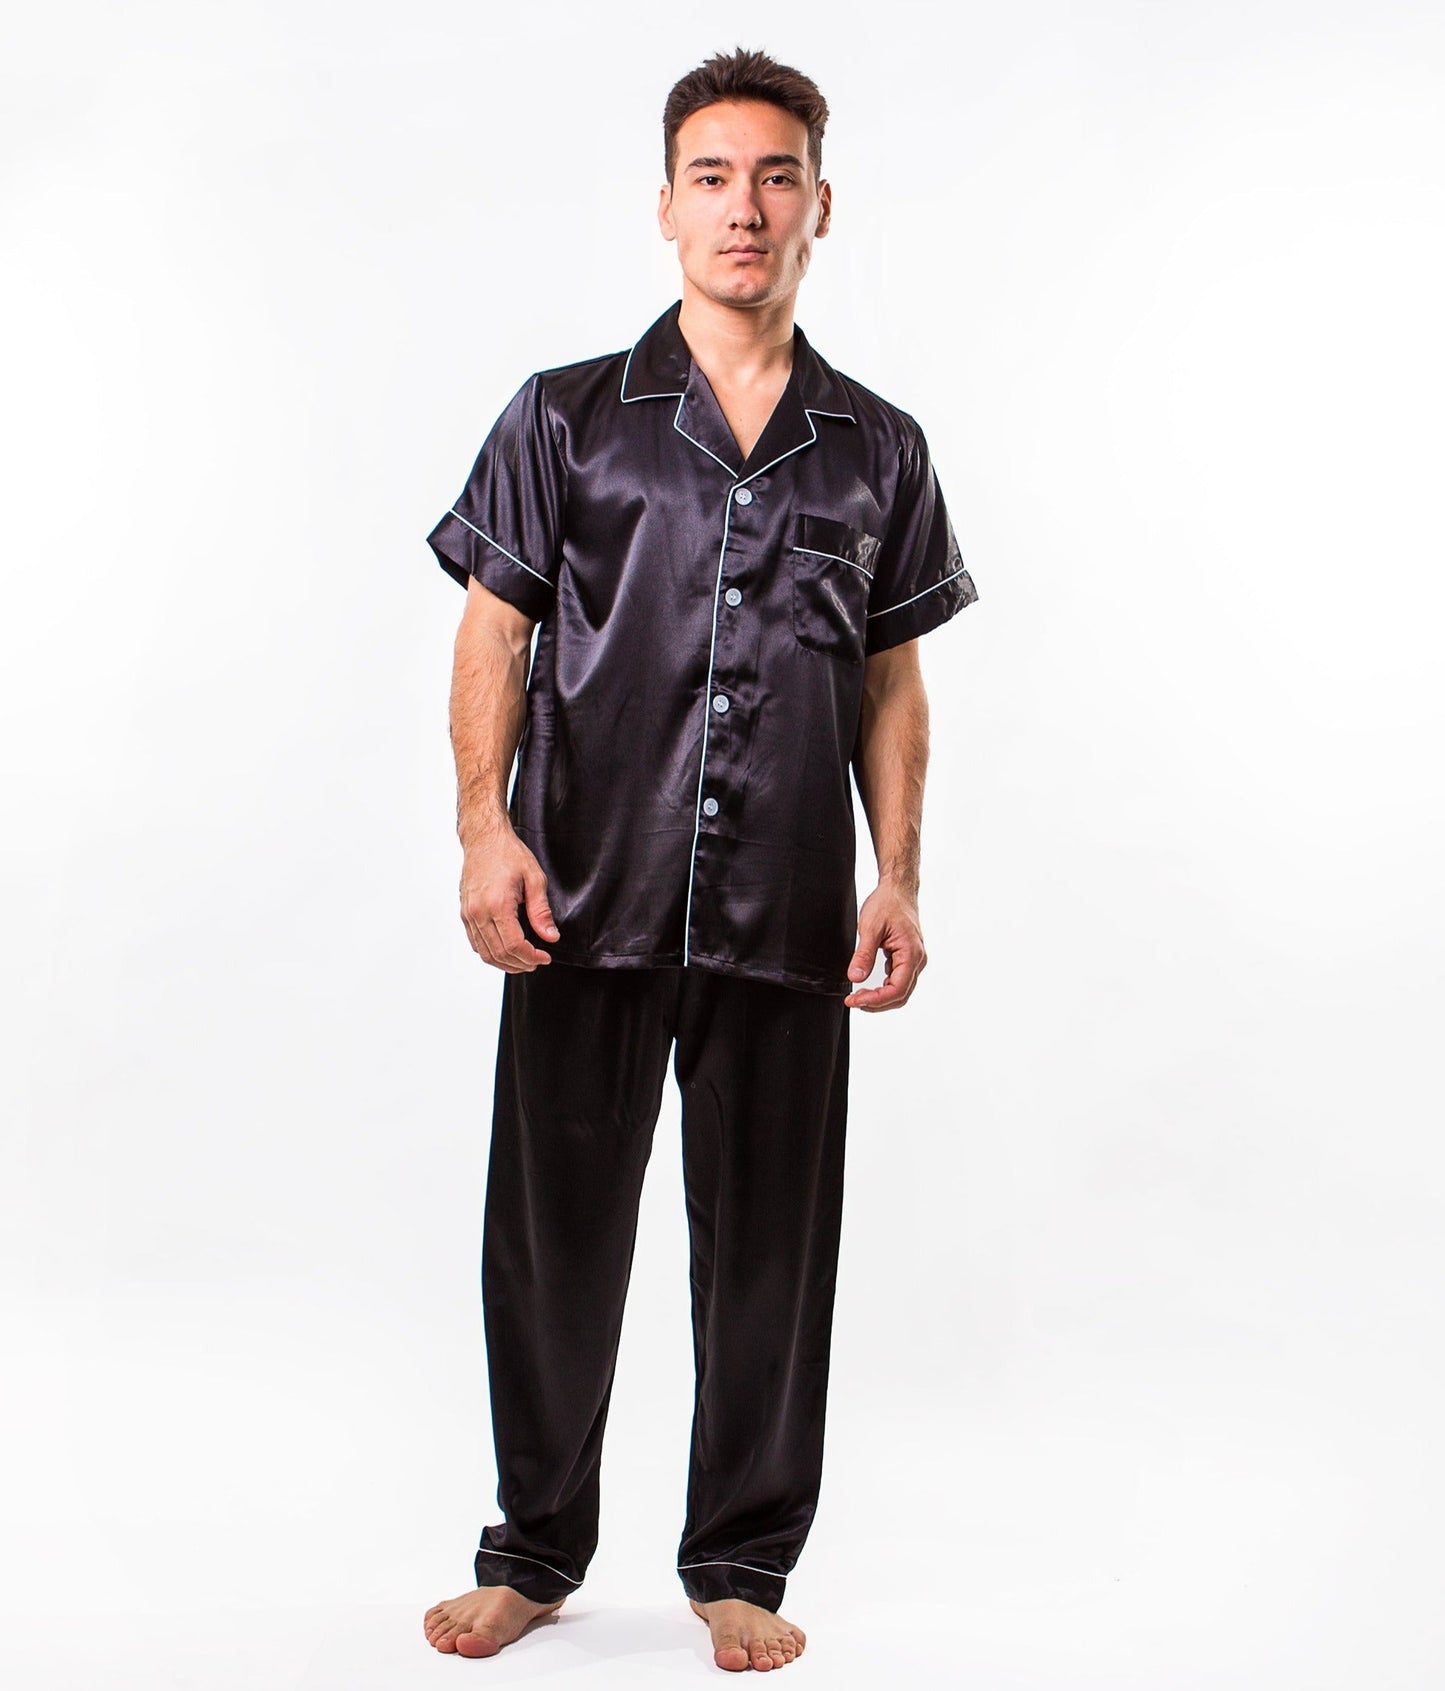 Men’s Satin Pajama Set Short Sleeves + Pants - Men’s Pajamas